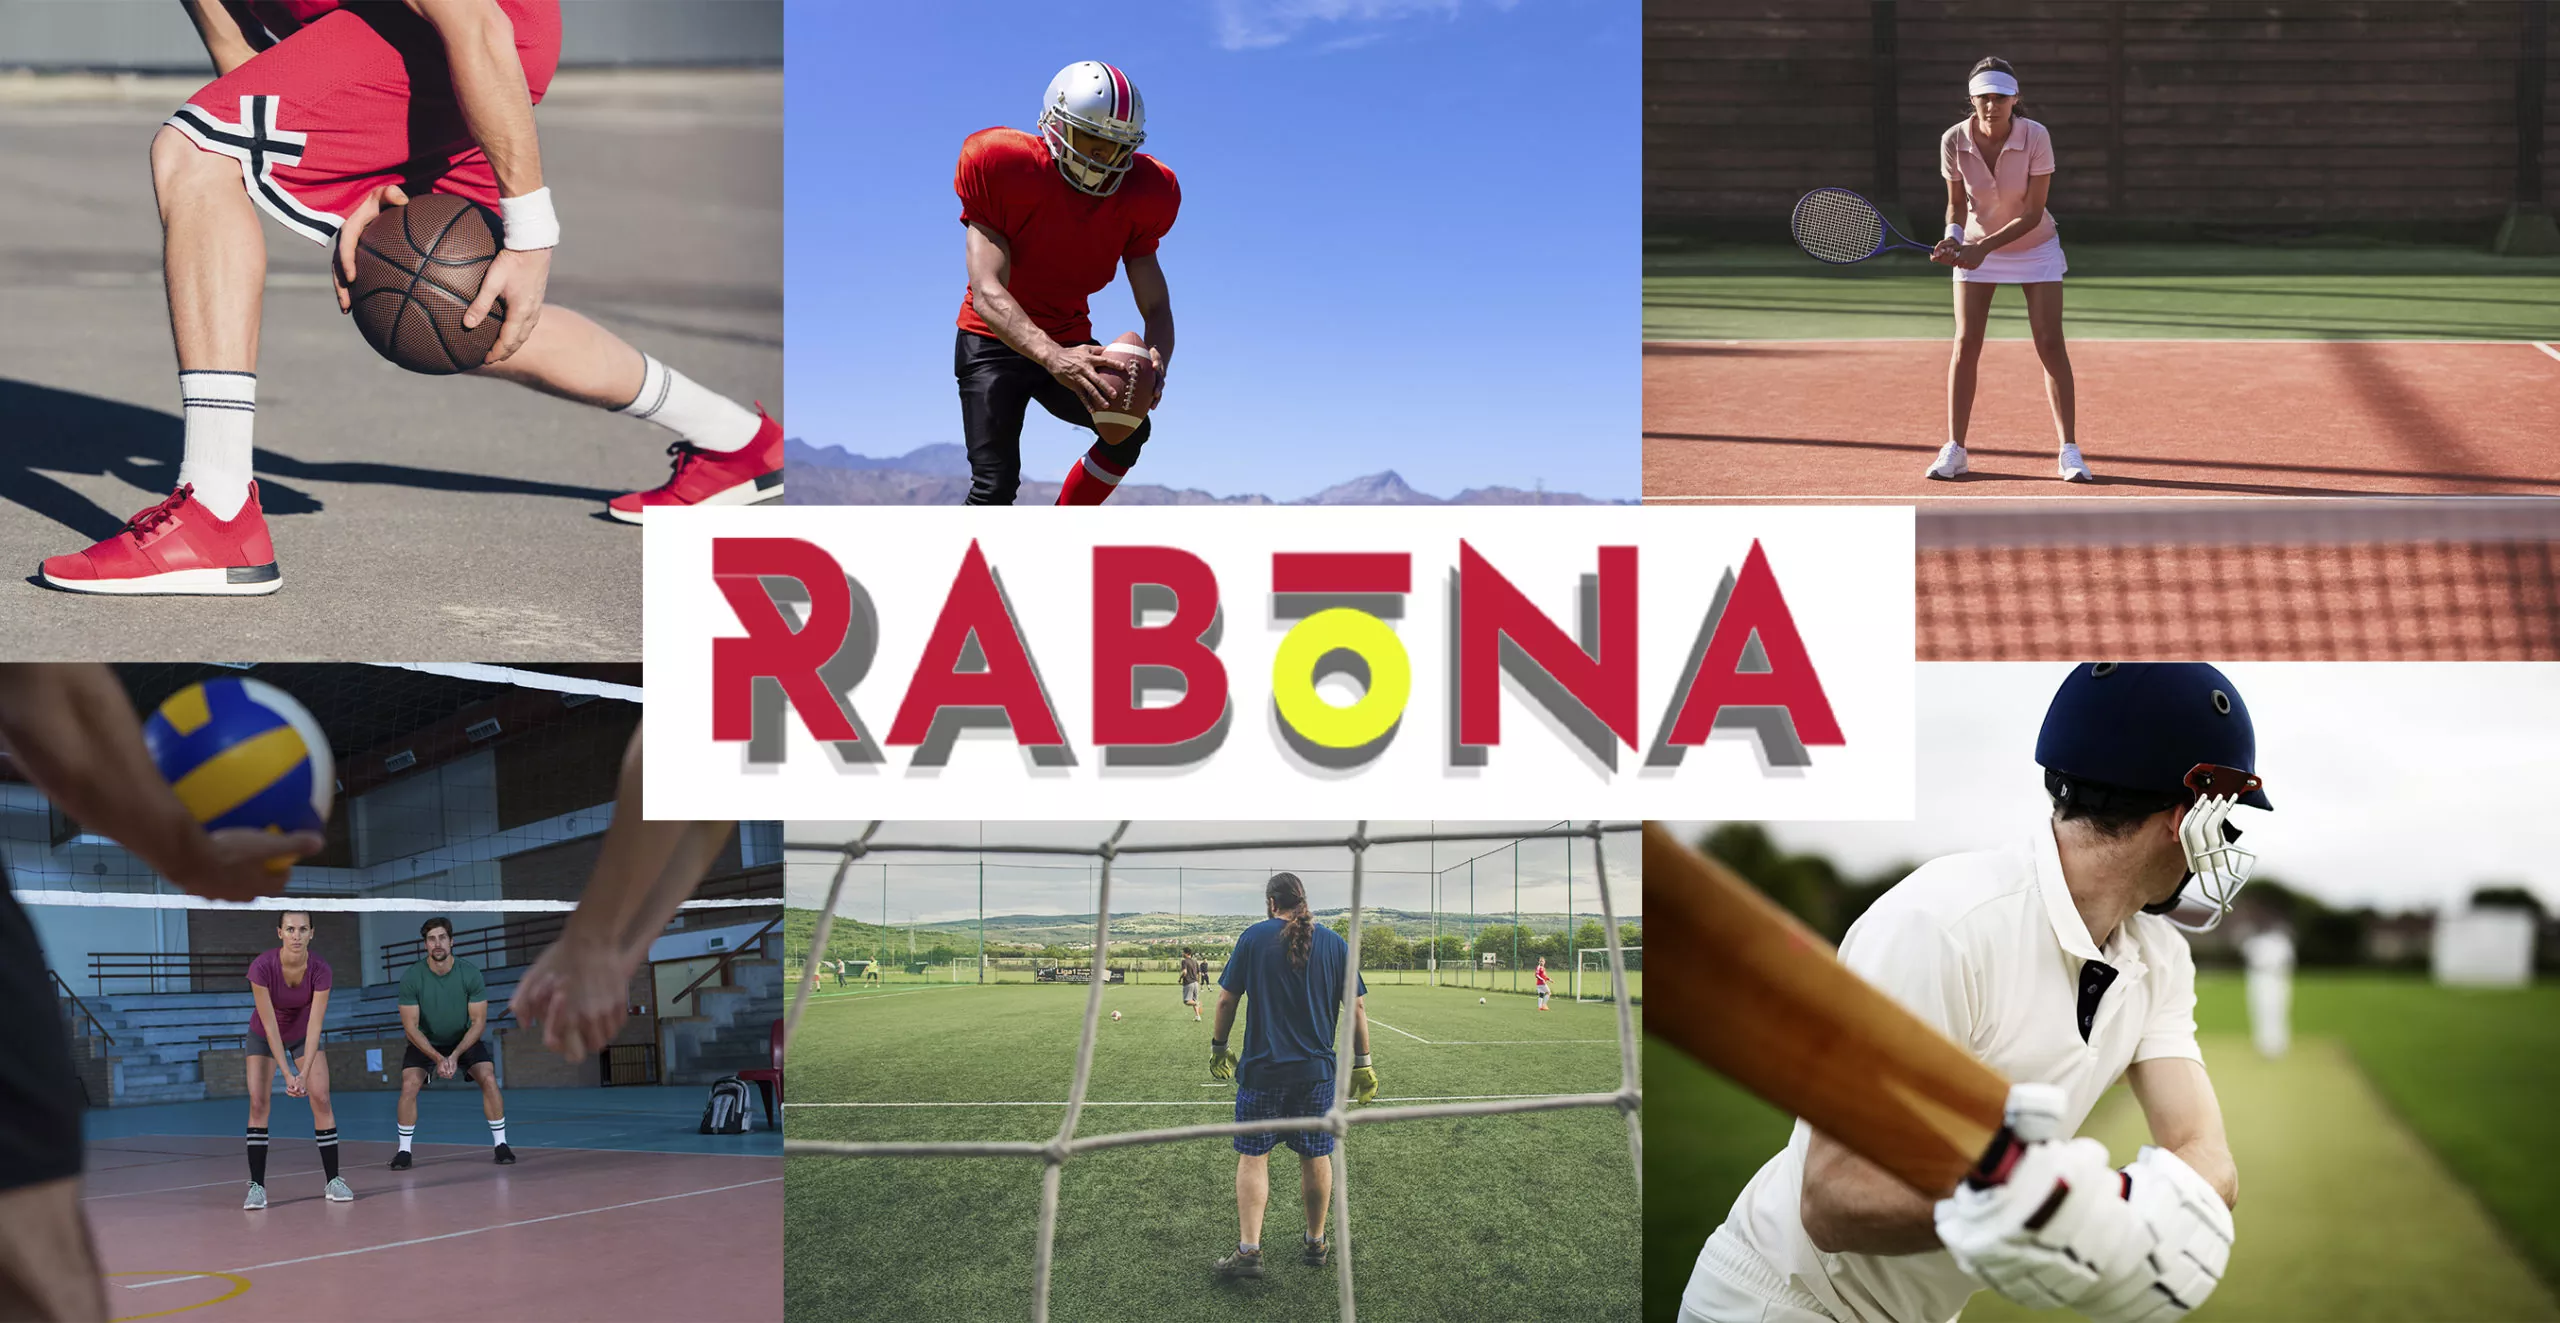 अपना पसंदीदा स्पोर्ट इवेंट चुनें और Rabona में उस पर दांव लगाएं।